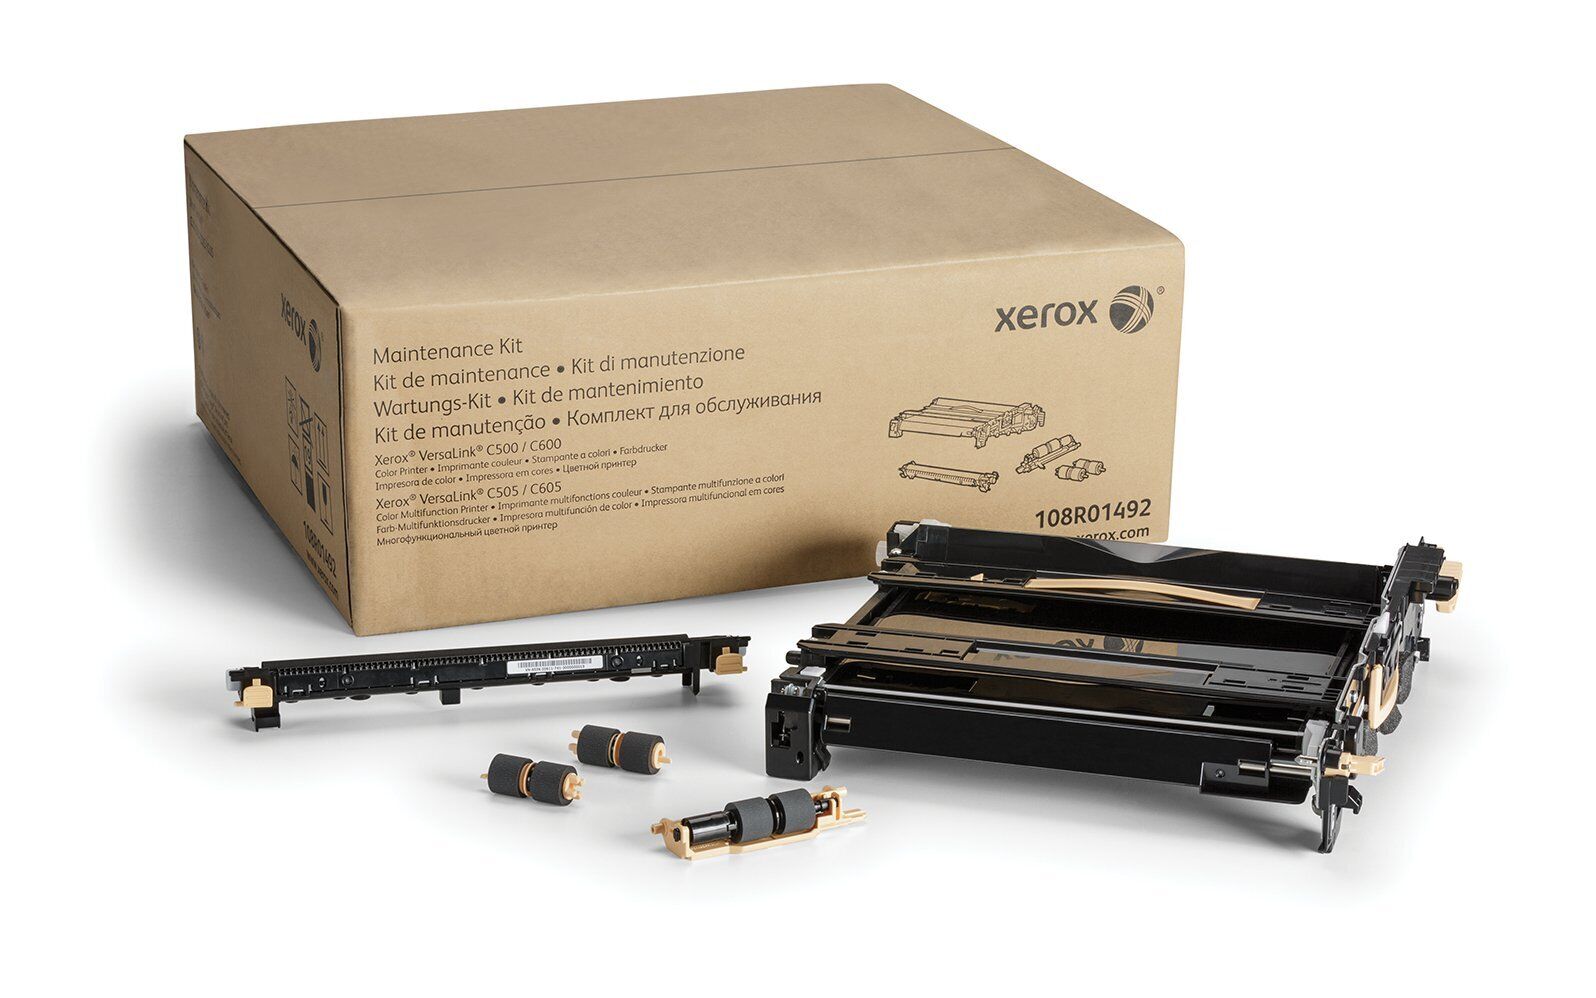 Genuine Xerox 108R01492 Maintenance Kit